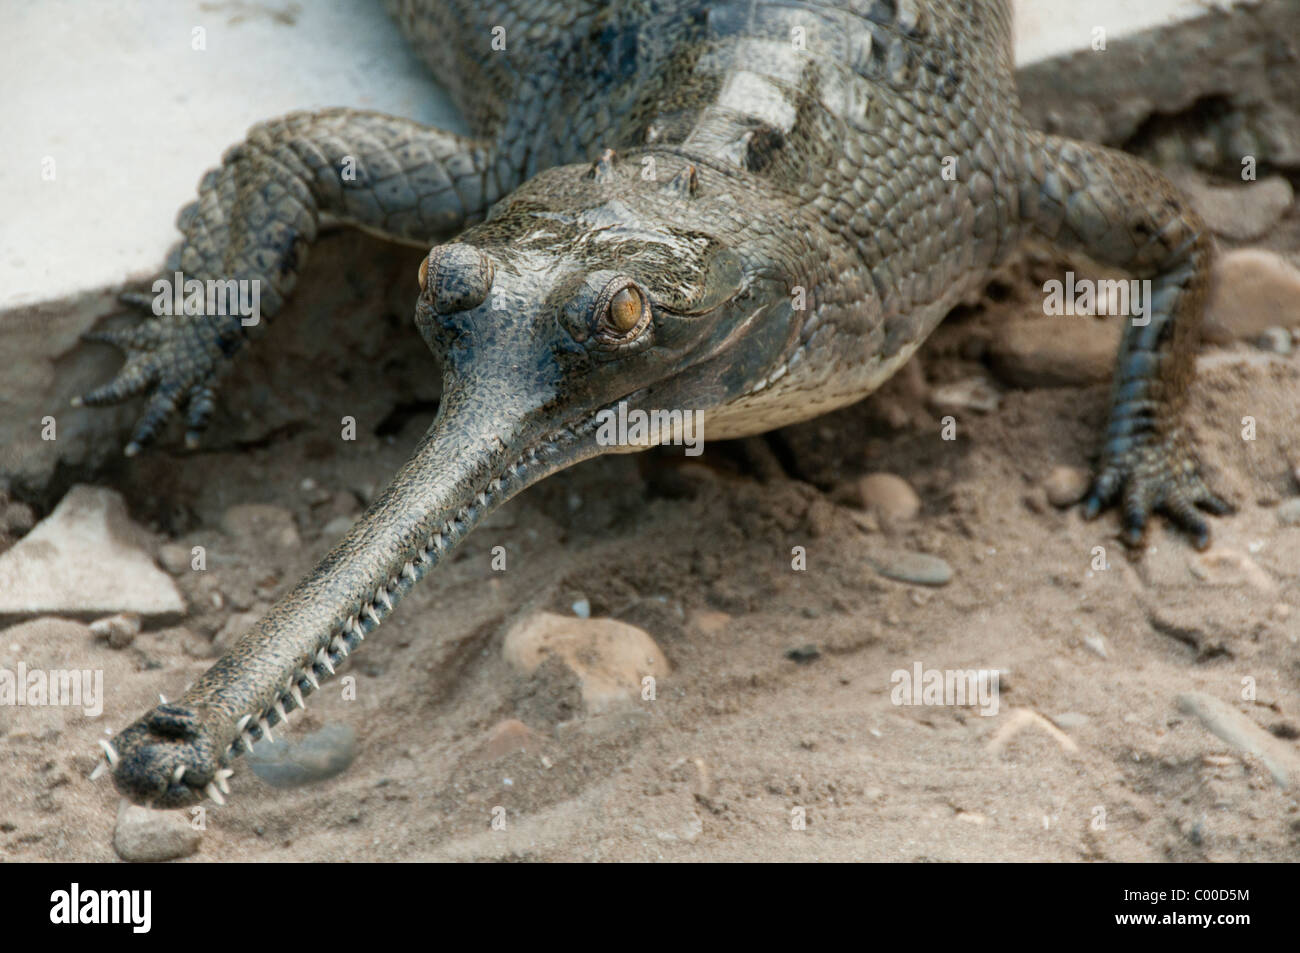 Gharial (Gavialis gangeticus) crocodile in Chitwan National Park, Nepal Stock Photo